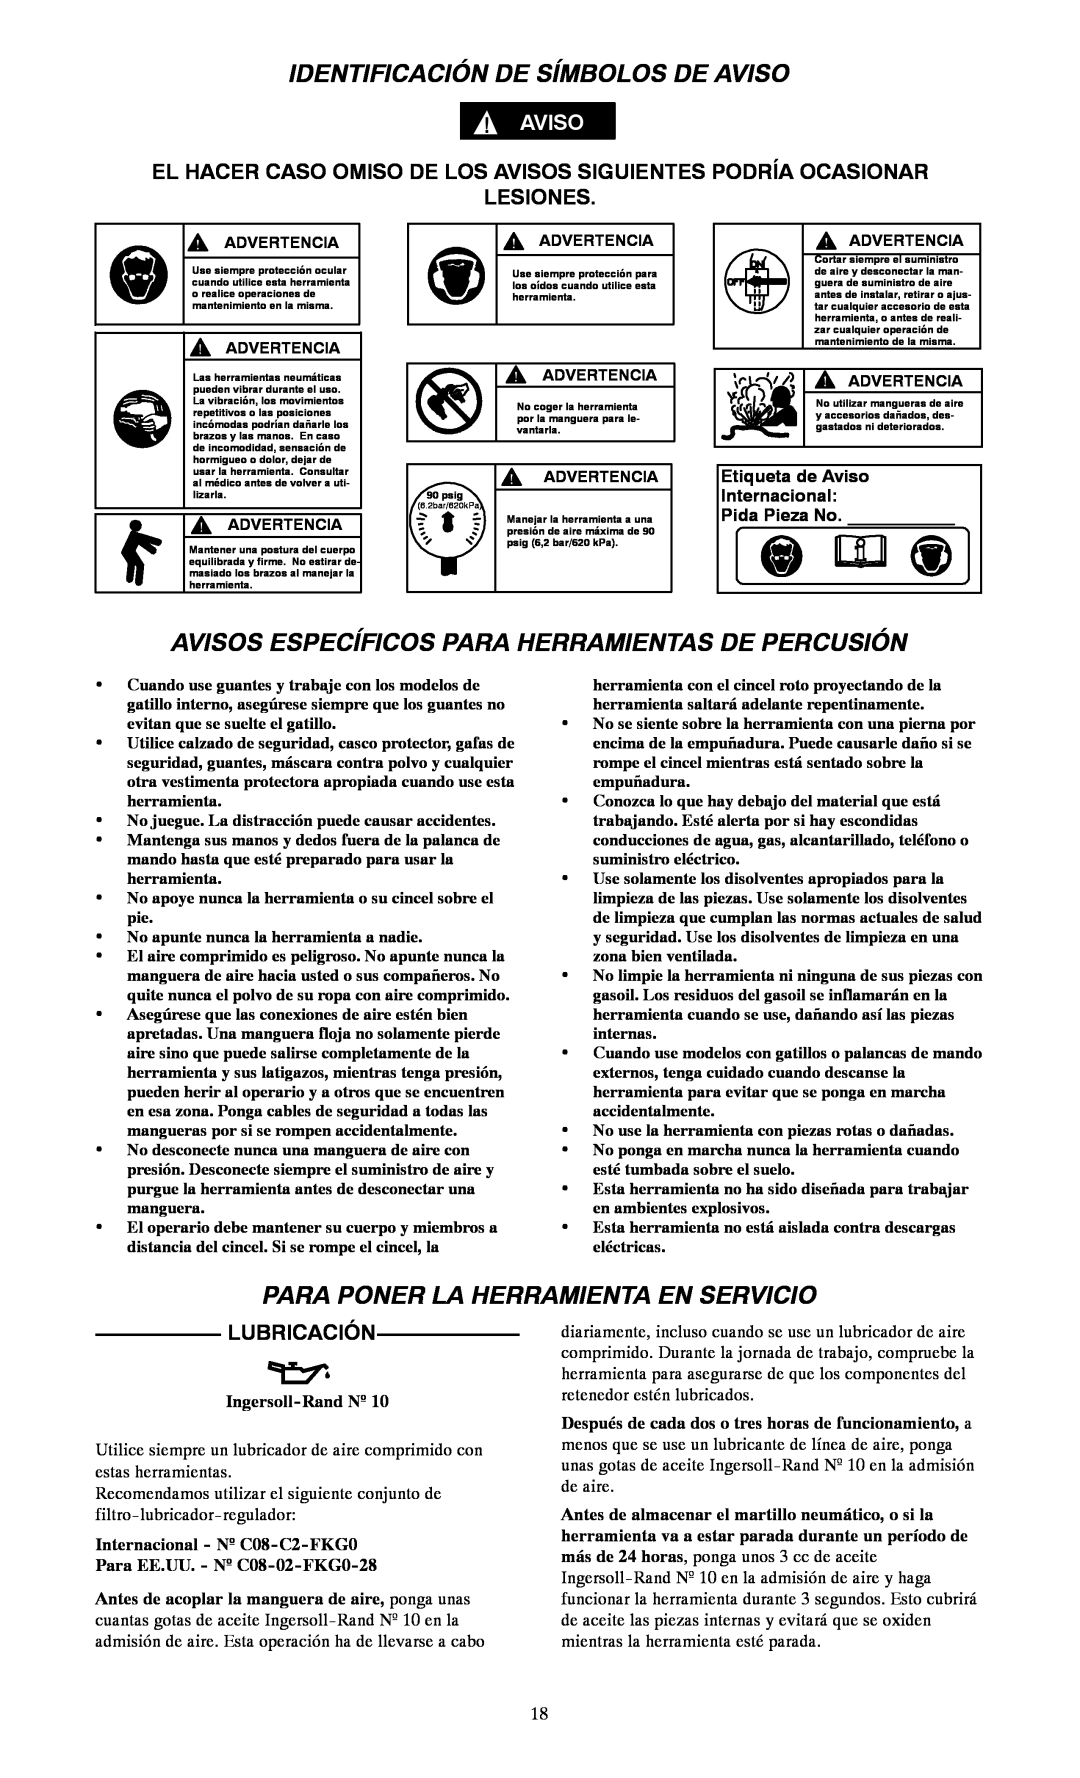 Ingersoll-Rand 116--EU Identificación De Símbolos De Aviso, Avisos Específicos Para Herramientas De Percusión, Lesiones 